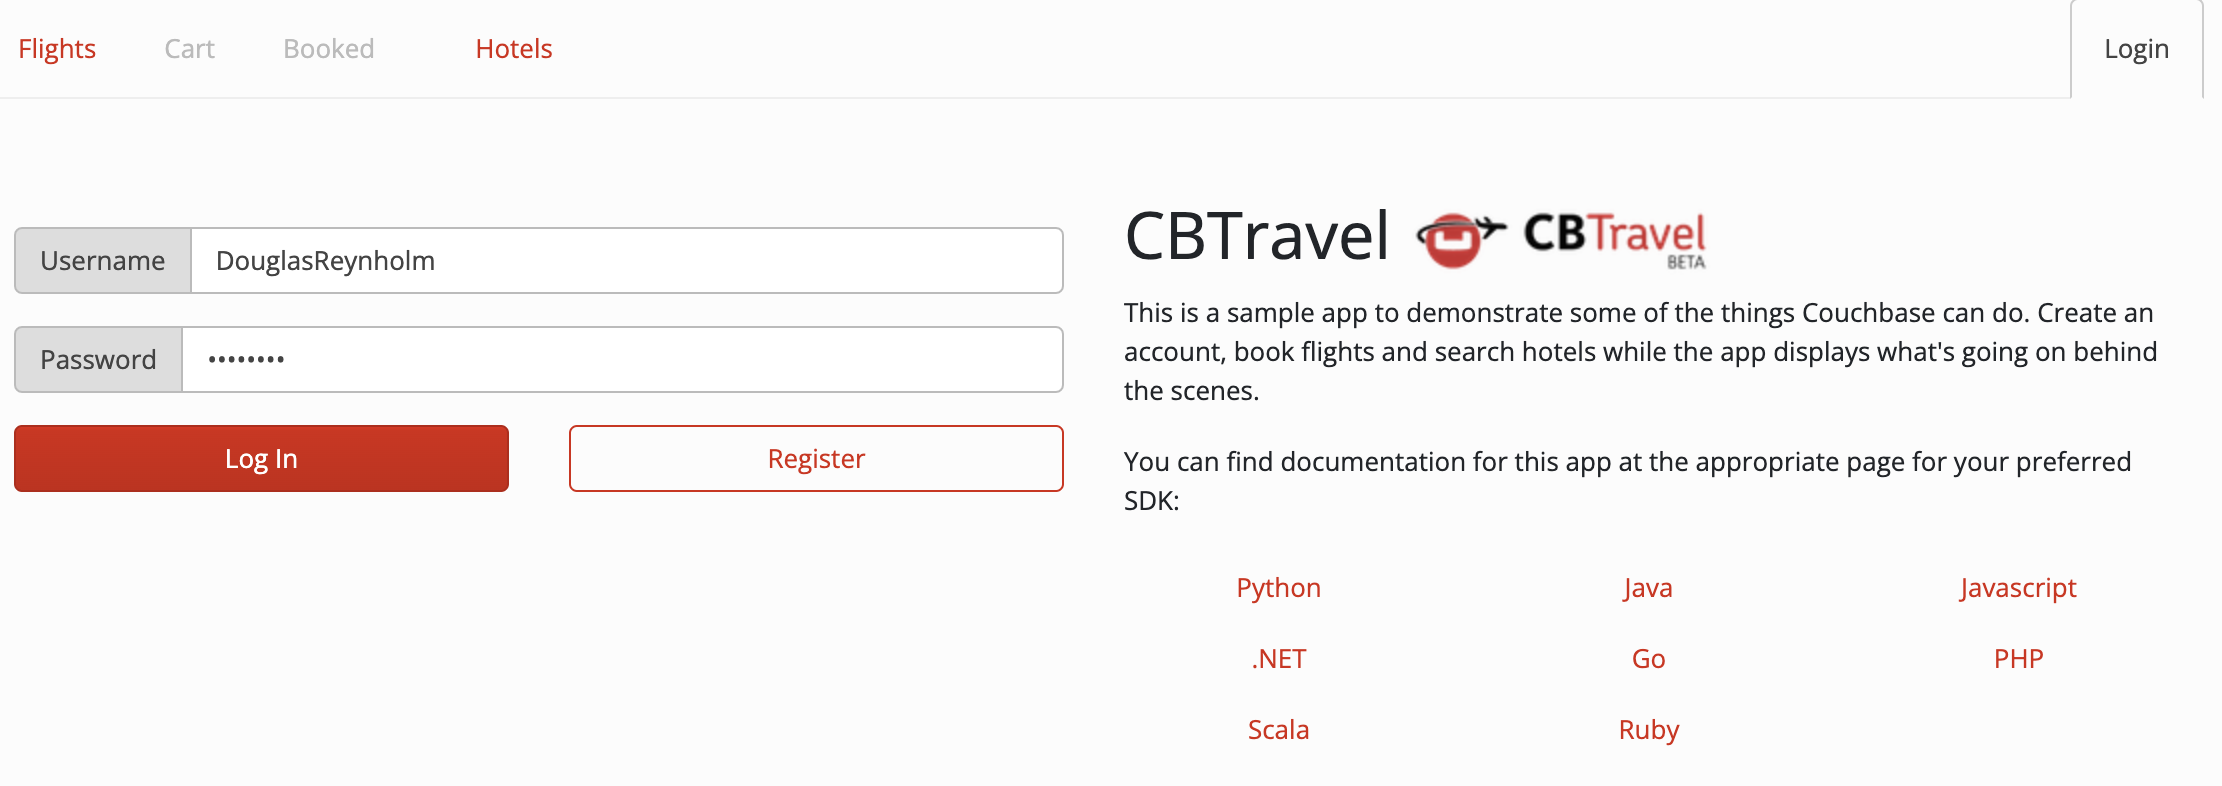 Travel Sample Register